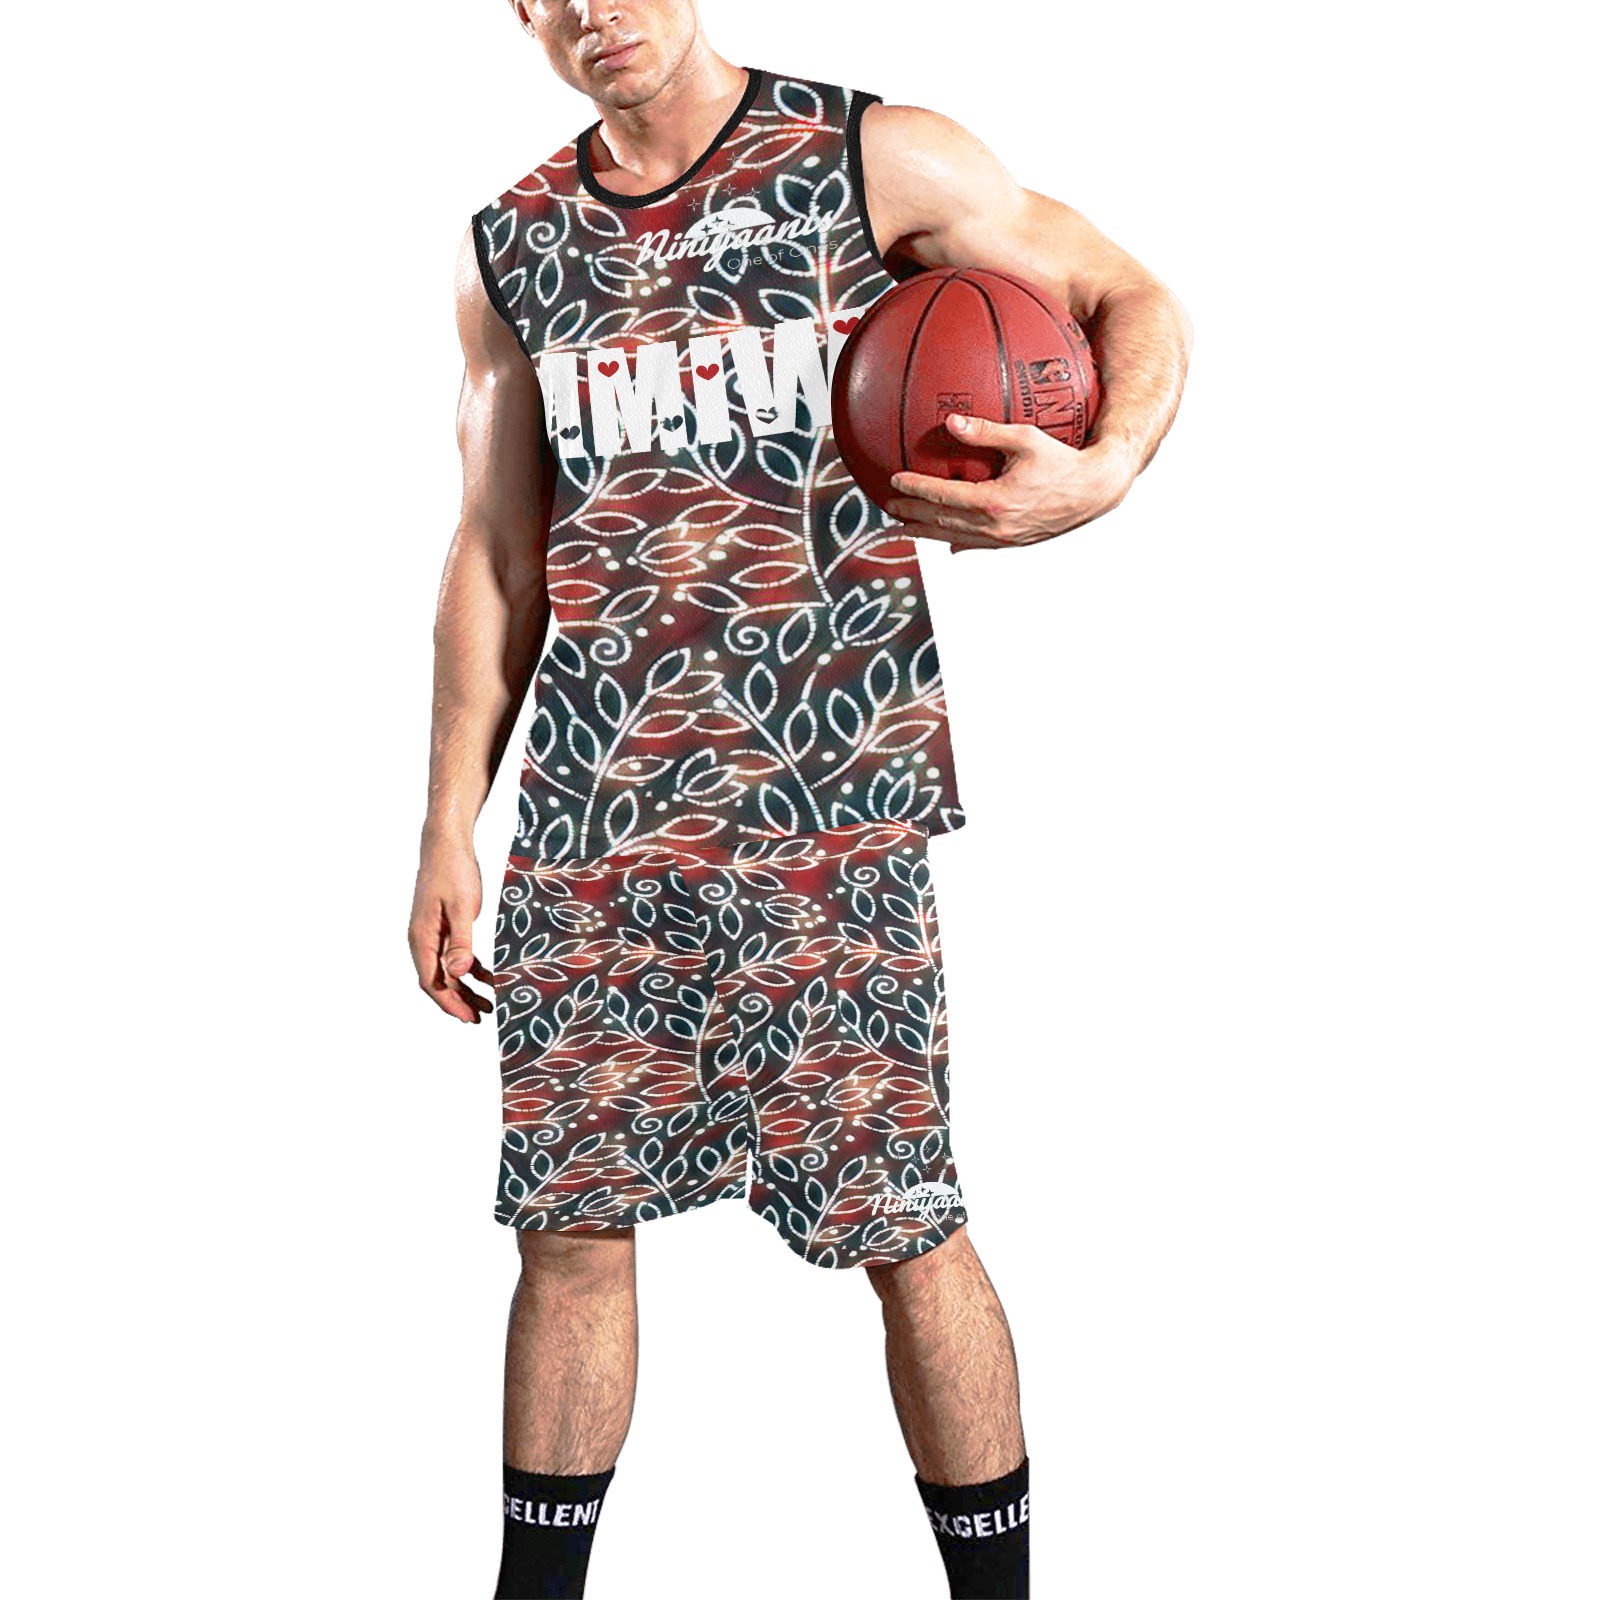 MMIW 8 All Over Print Basketball Uniform